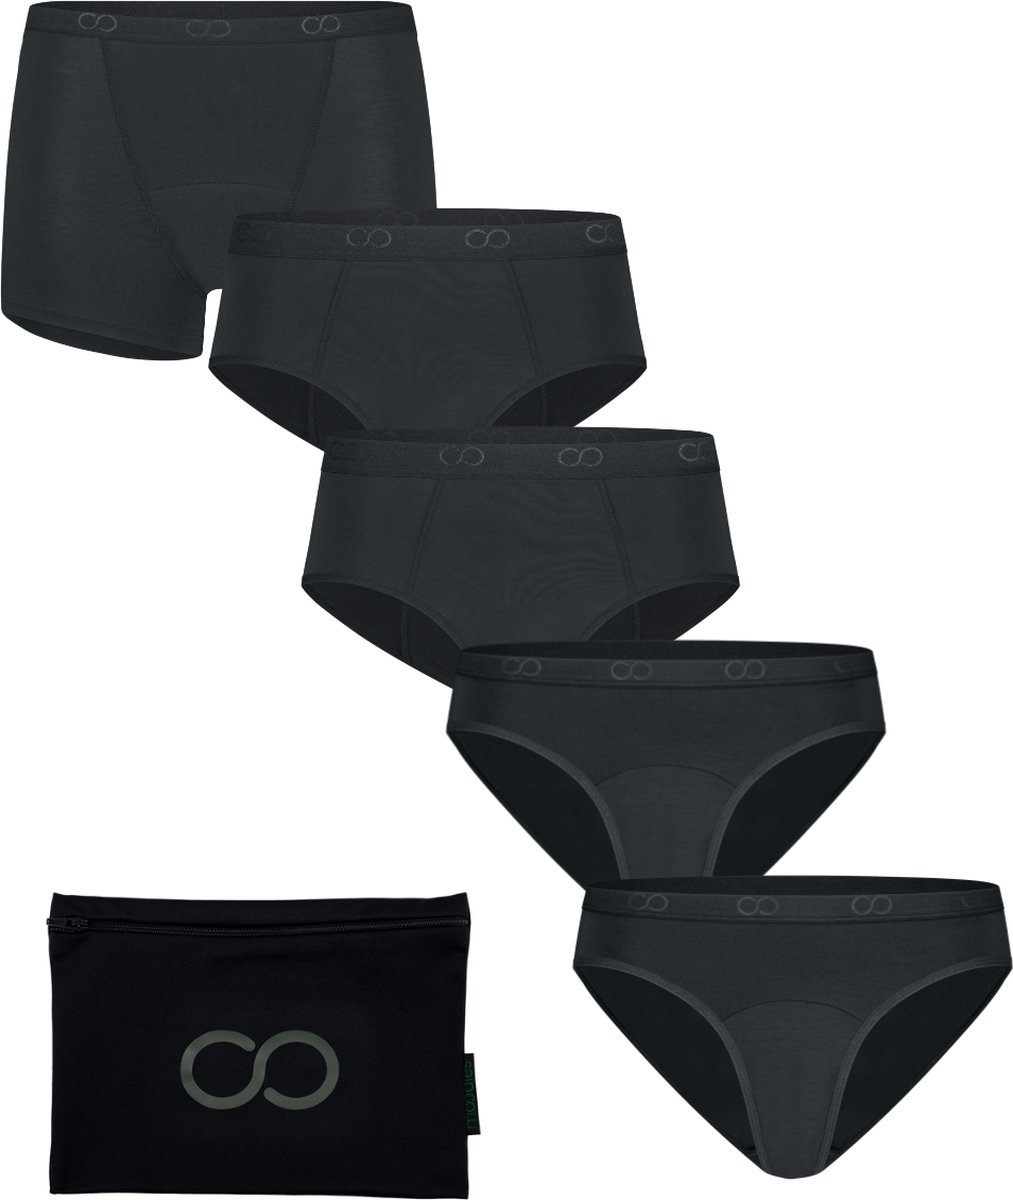 Moodies menstruatie & incontinentie ondergoed - bundel bamboe - 5 stuks - dames - zwart - maat M - period underwear